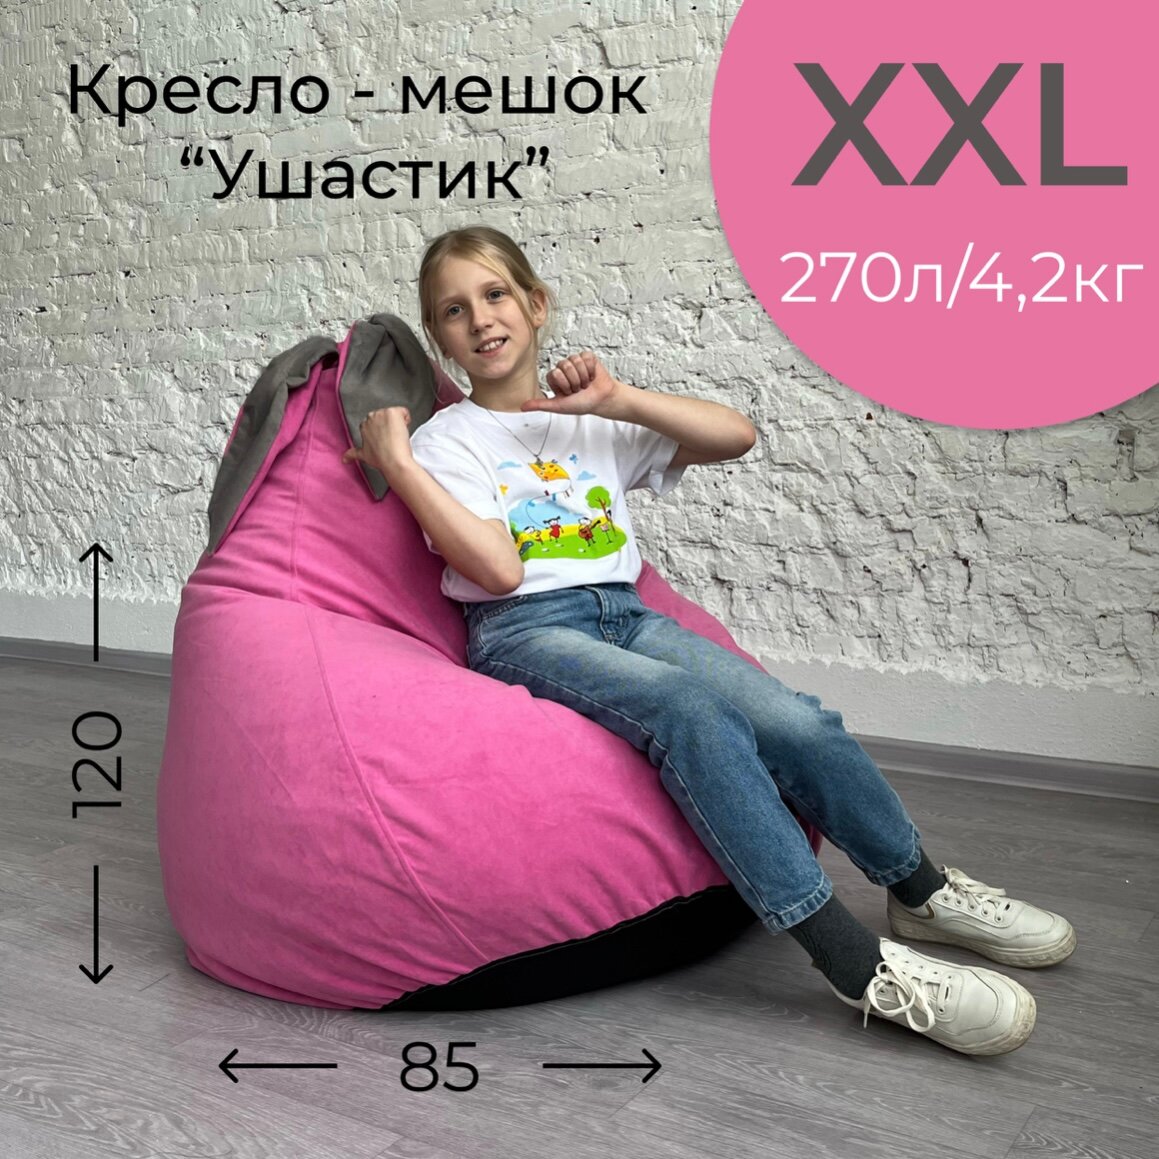 Кресло-мешок Розовый "Ушастик" для детей и взрослых, размер XXL